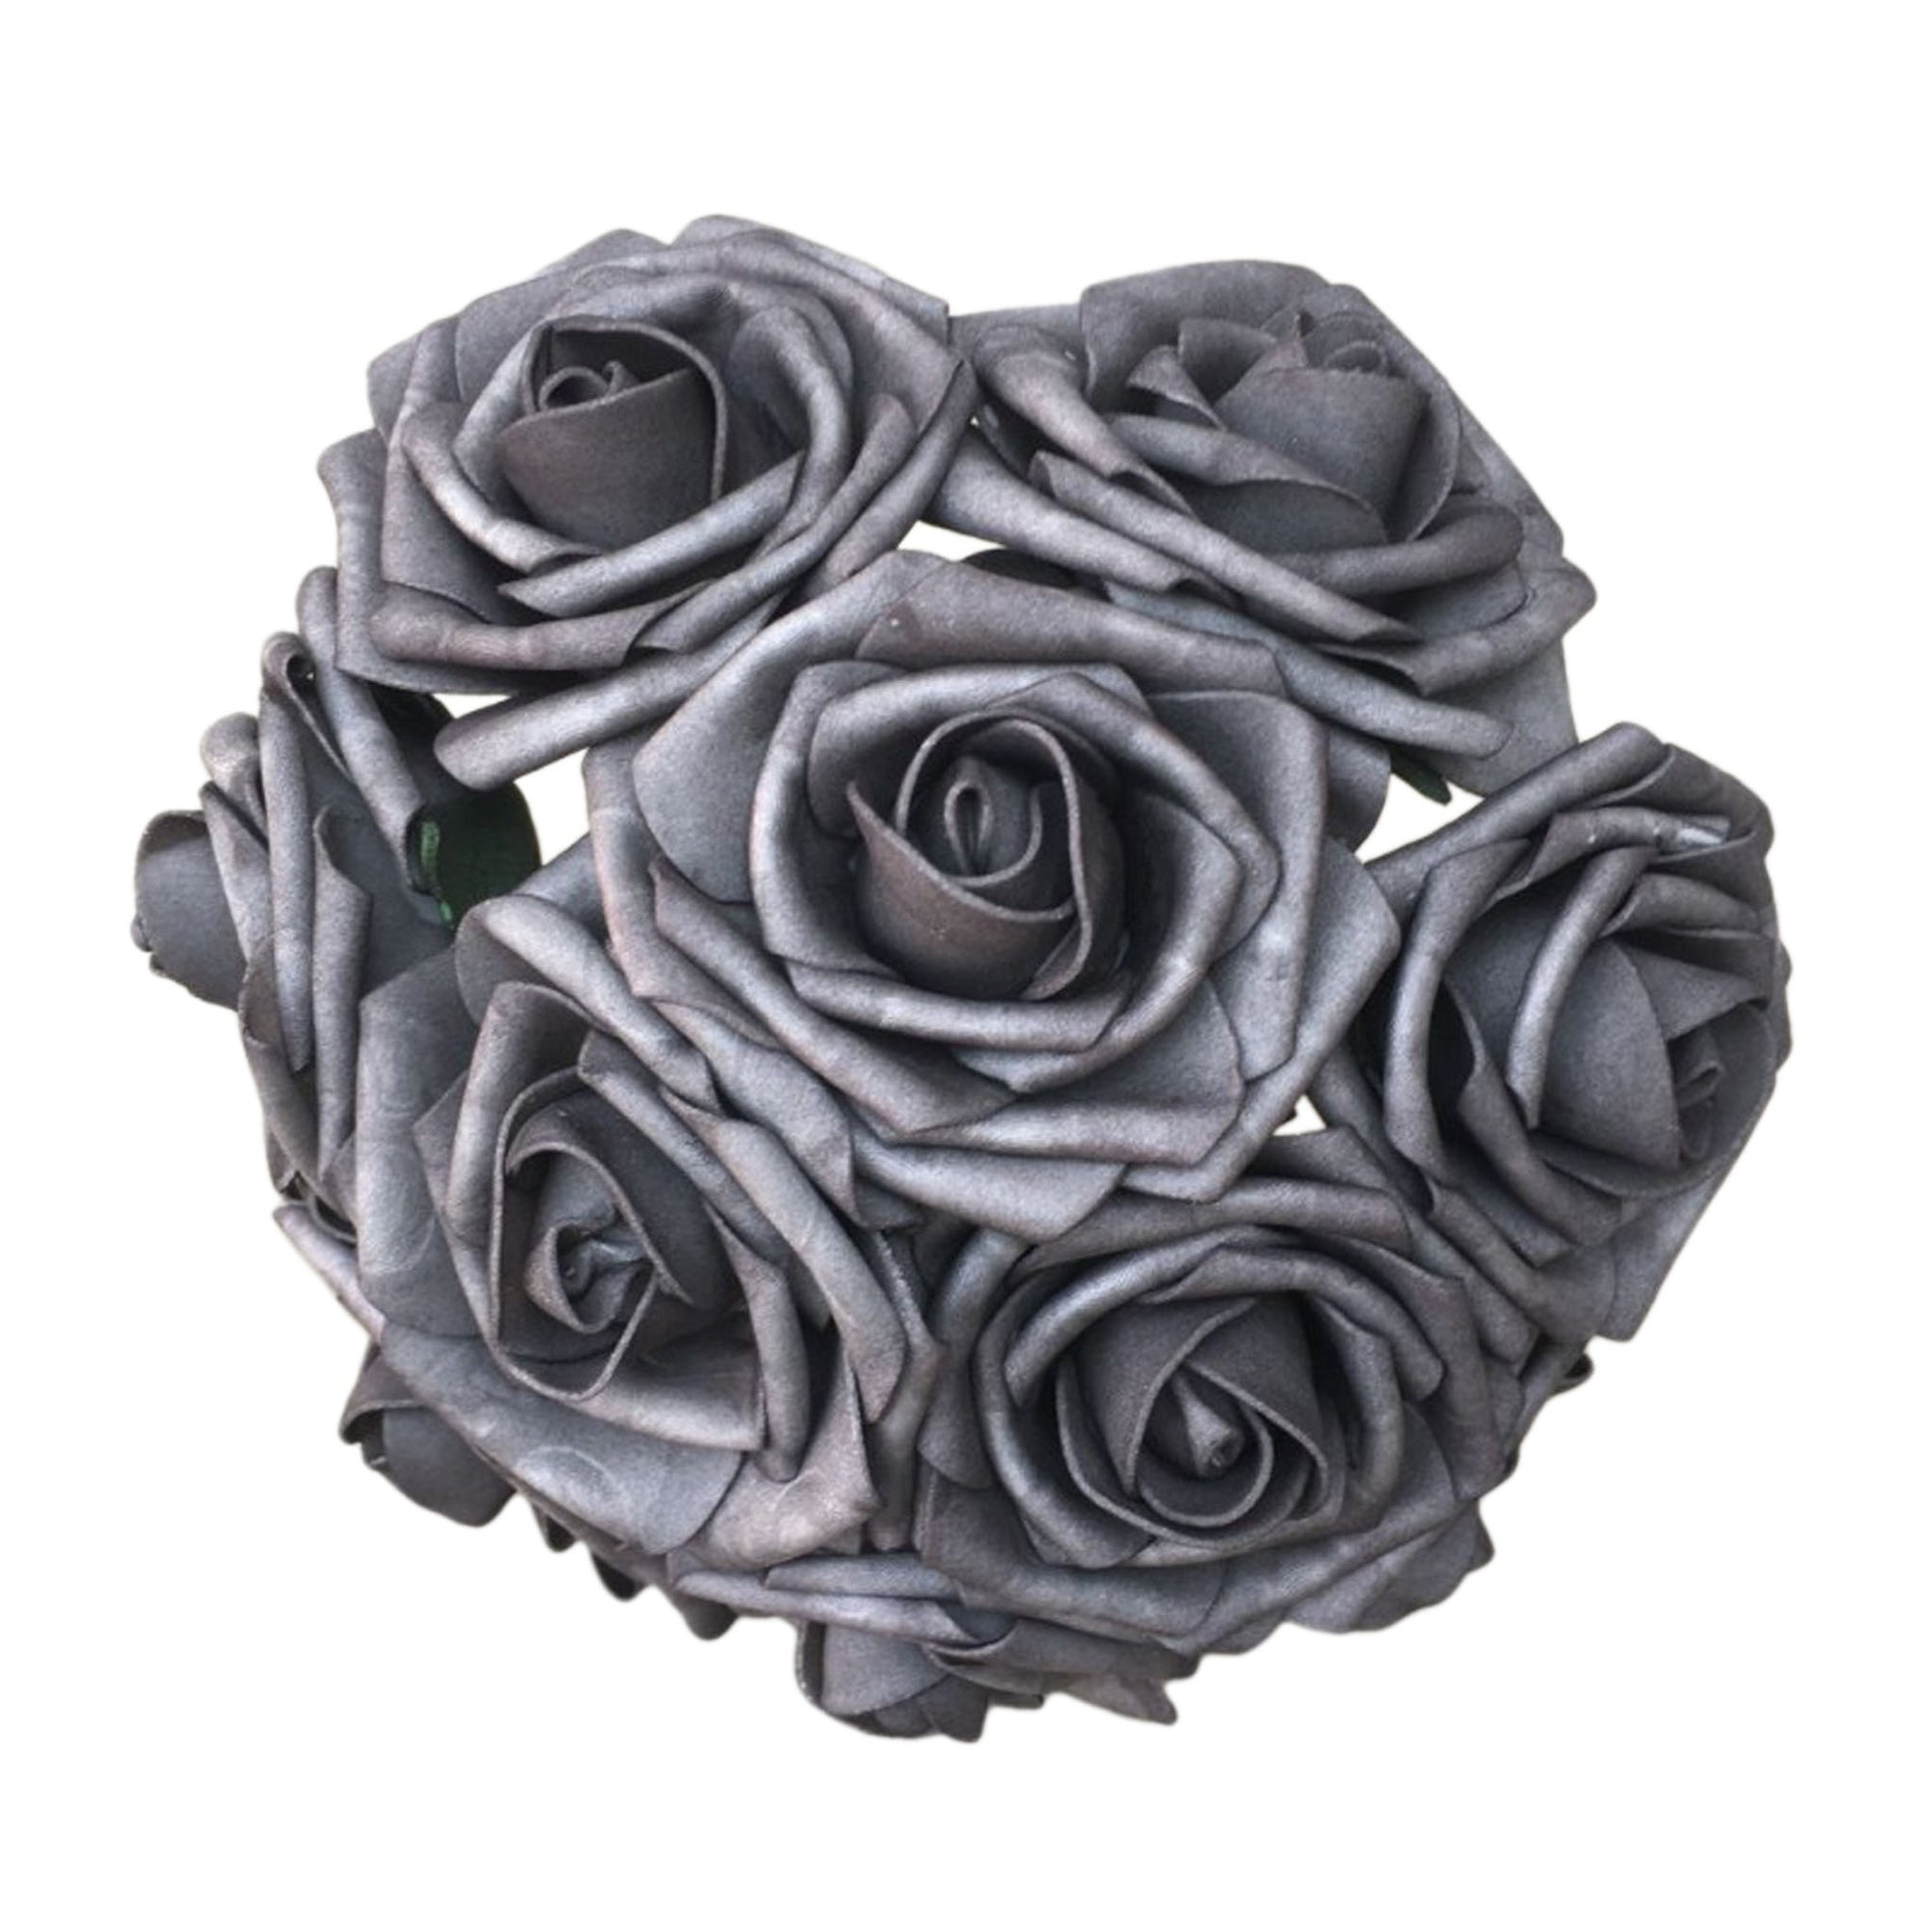 Dark Gray Roses Fake Flowers 50 Bulk